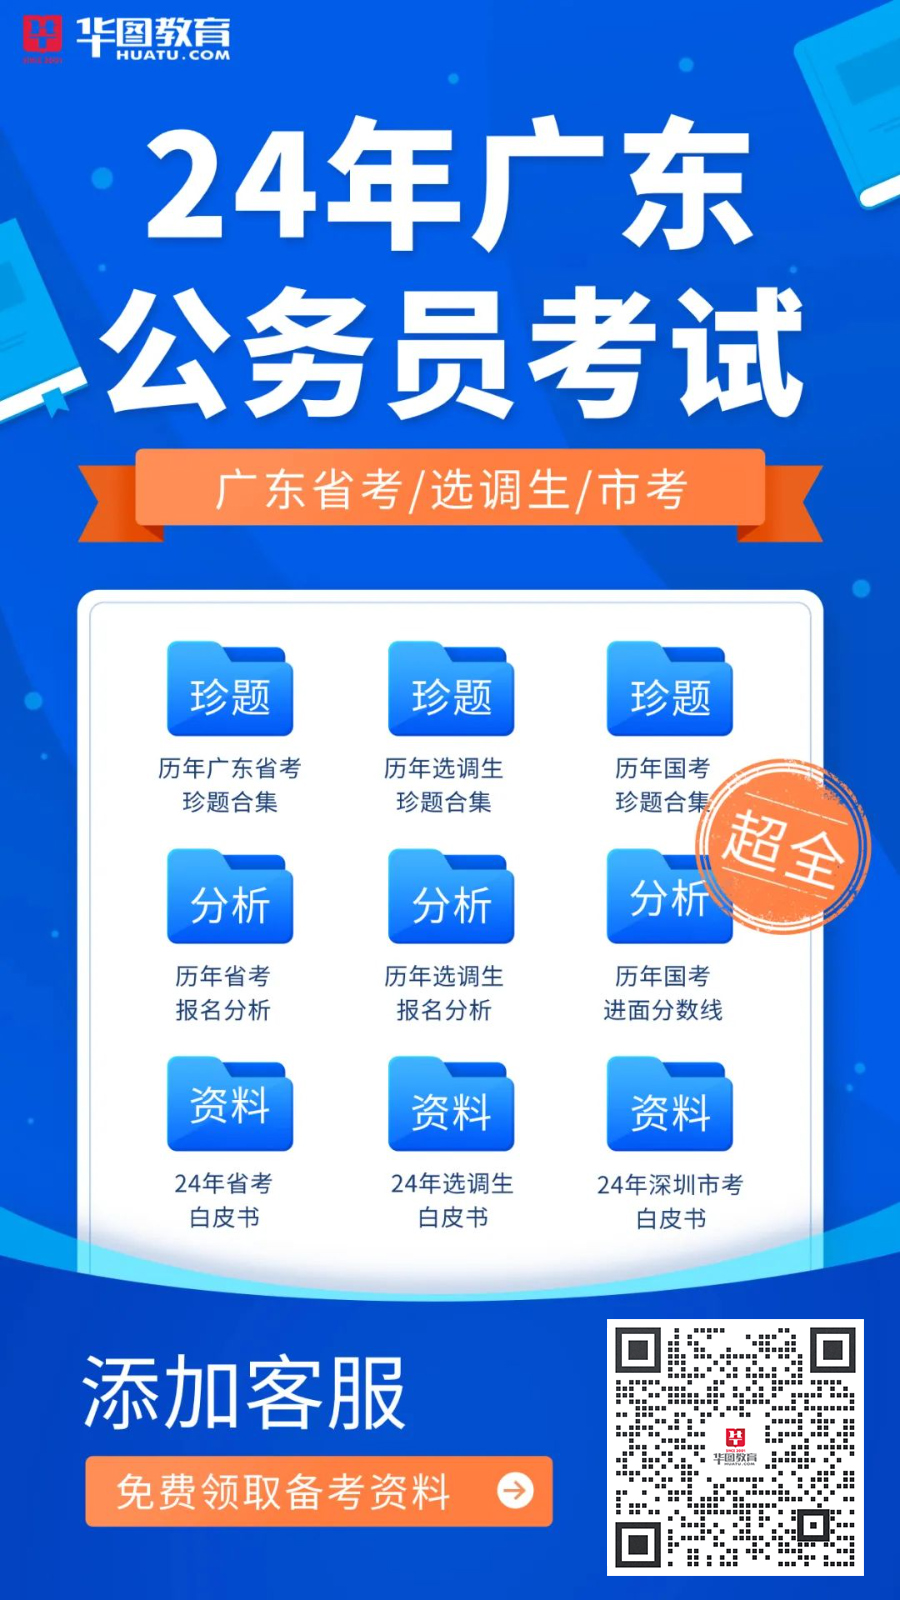 2024年广东省考试录用公务员职位表